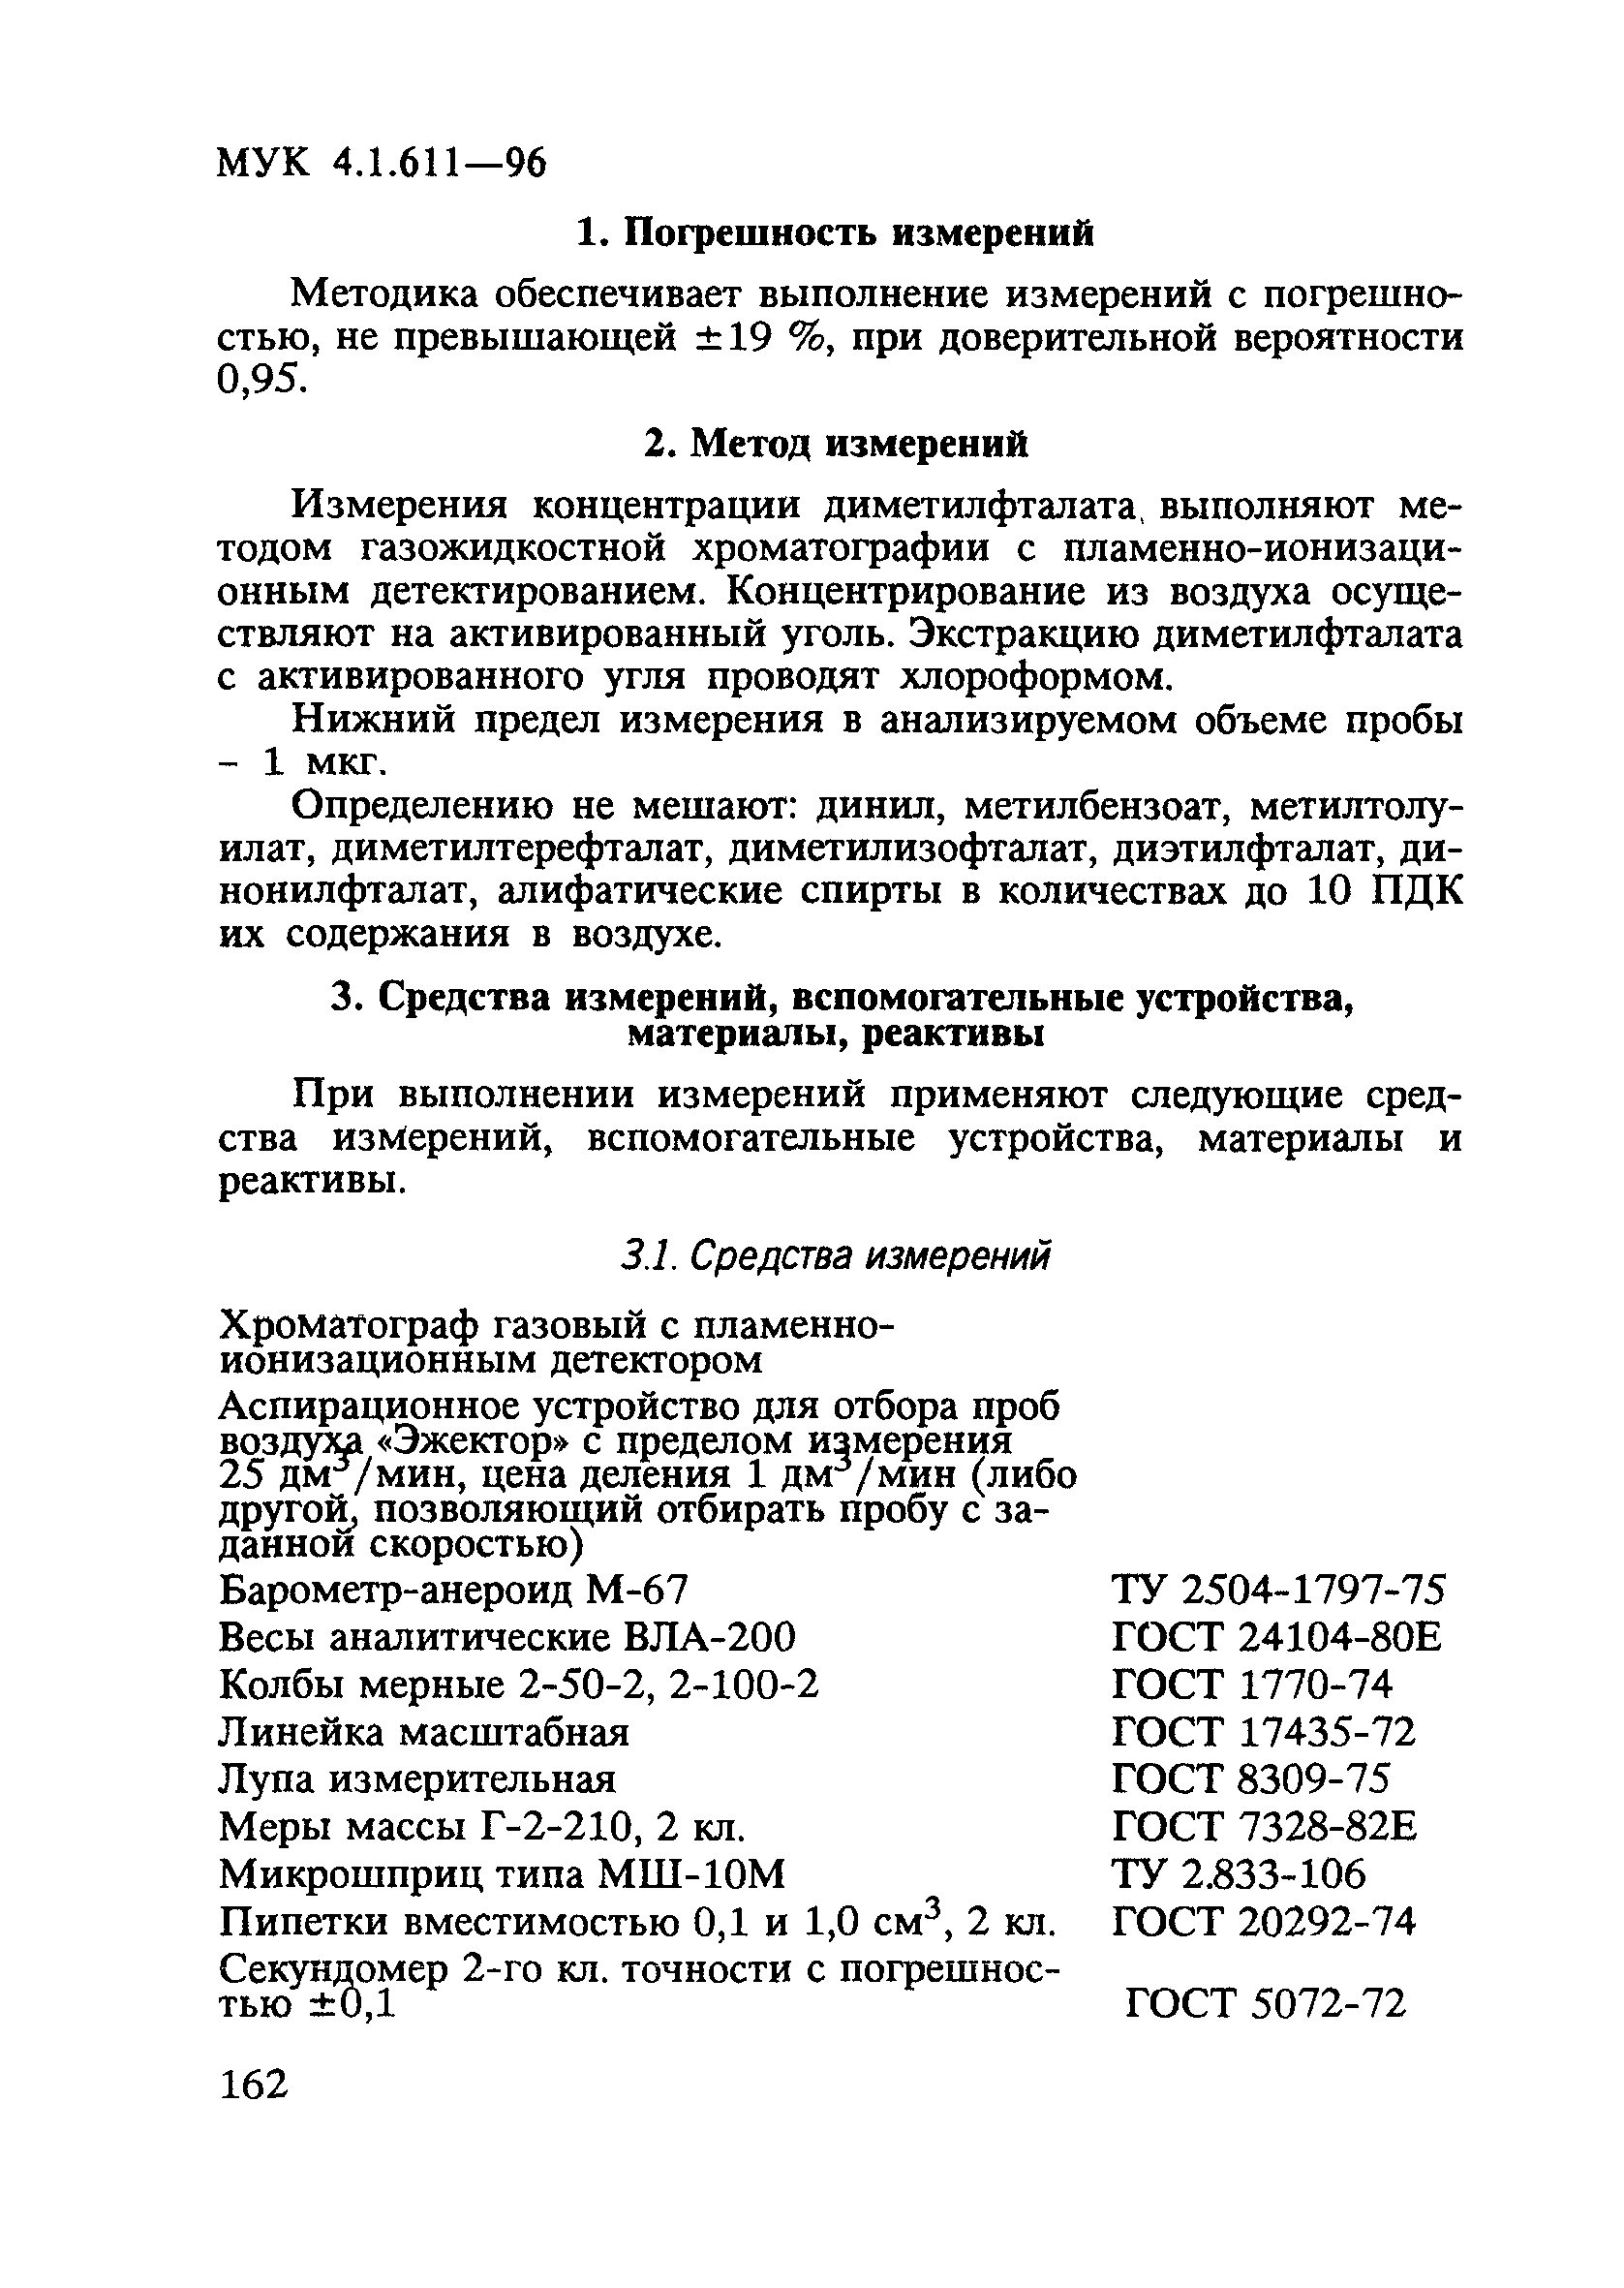 МУК 4.1.611-96